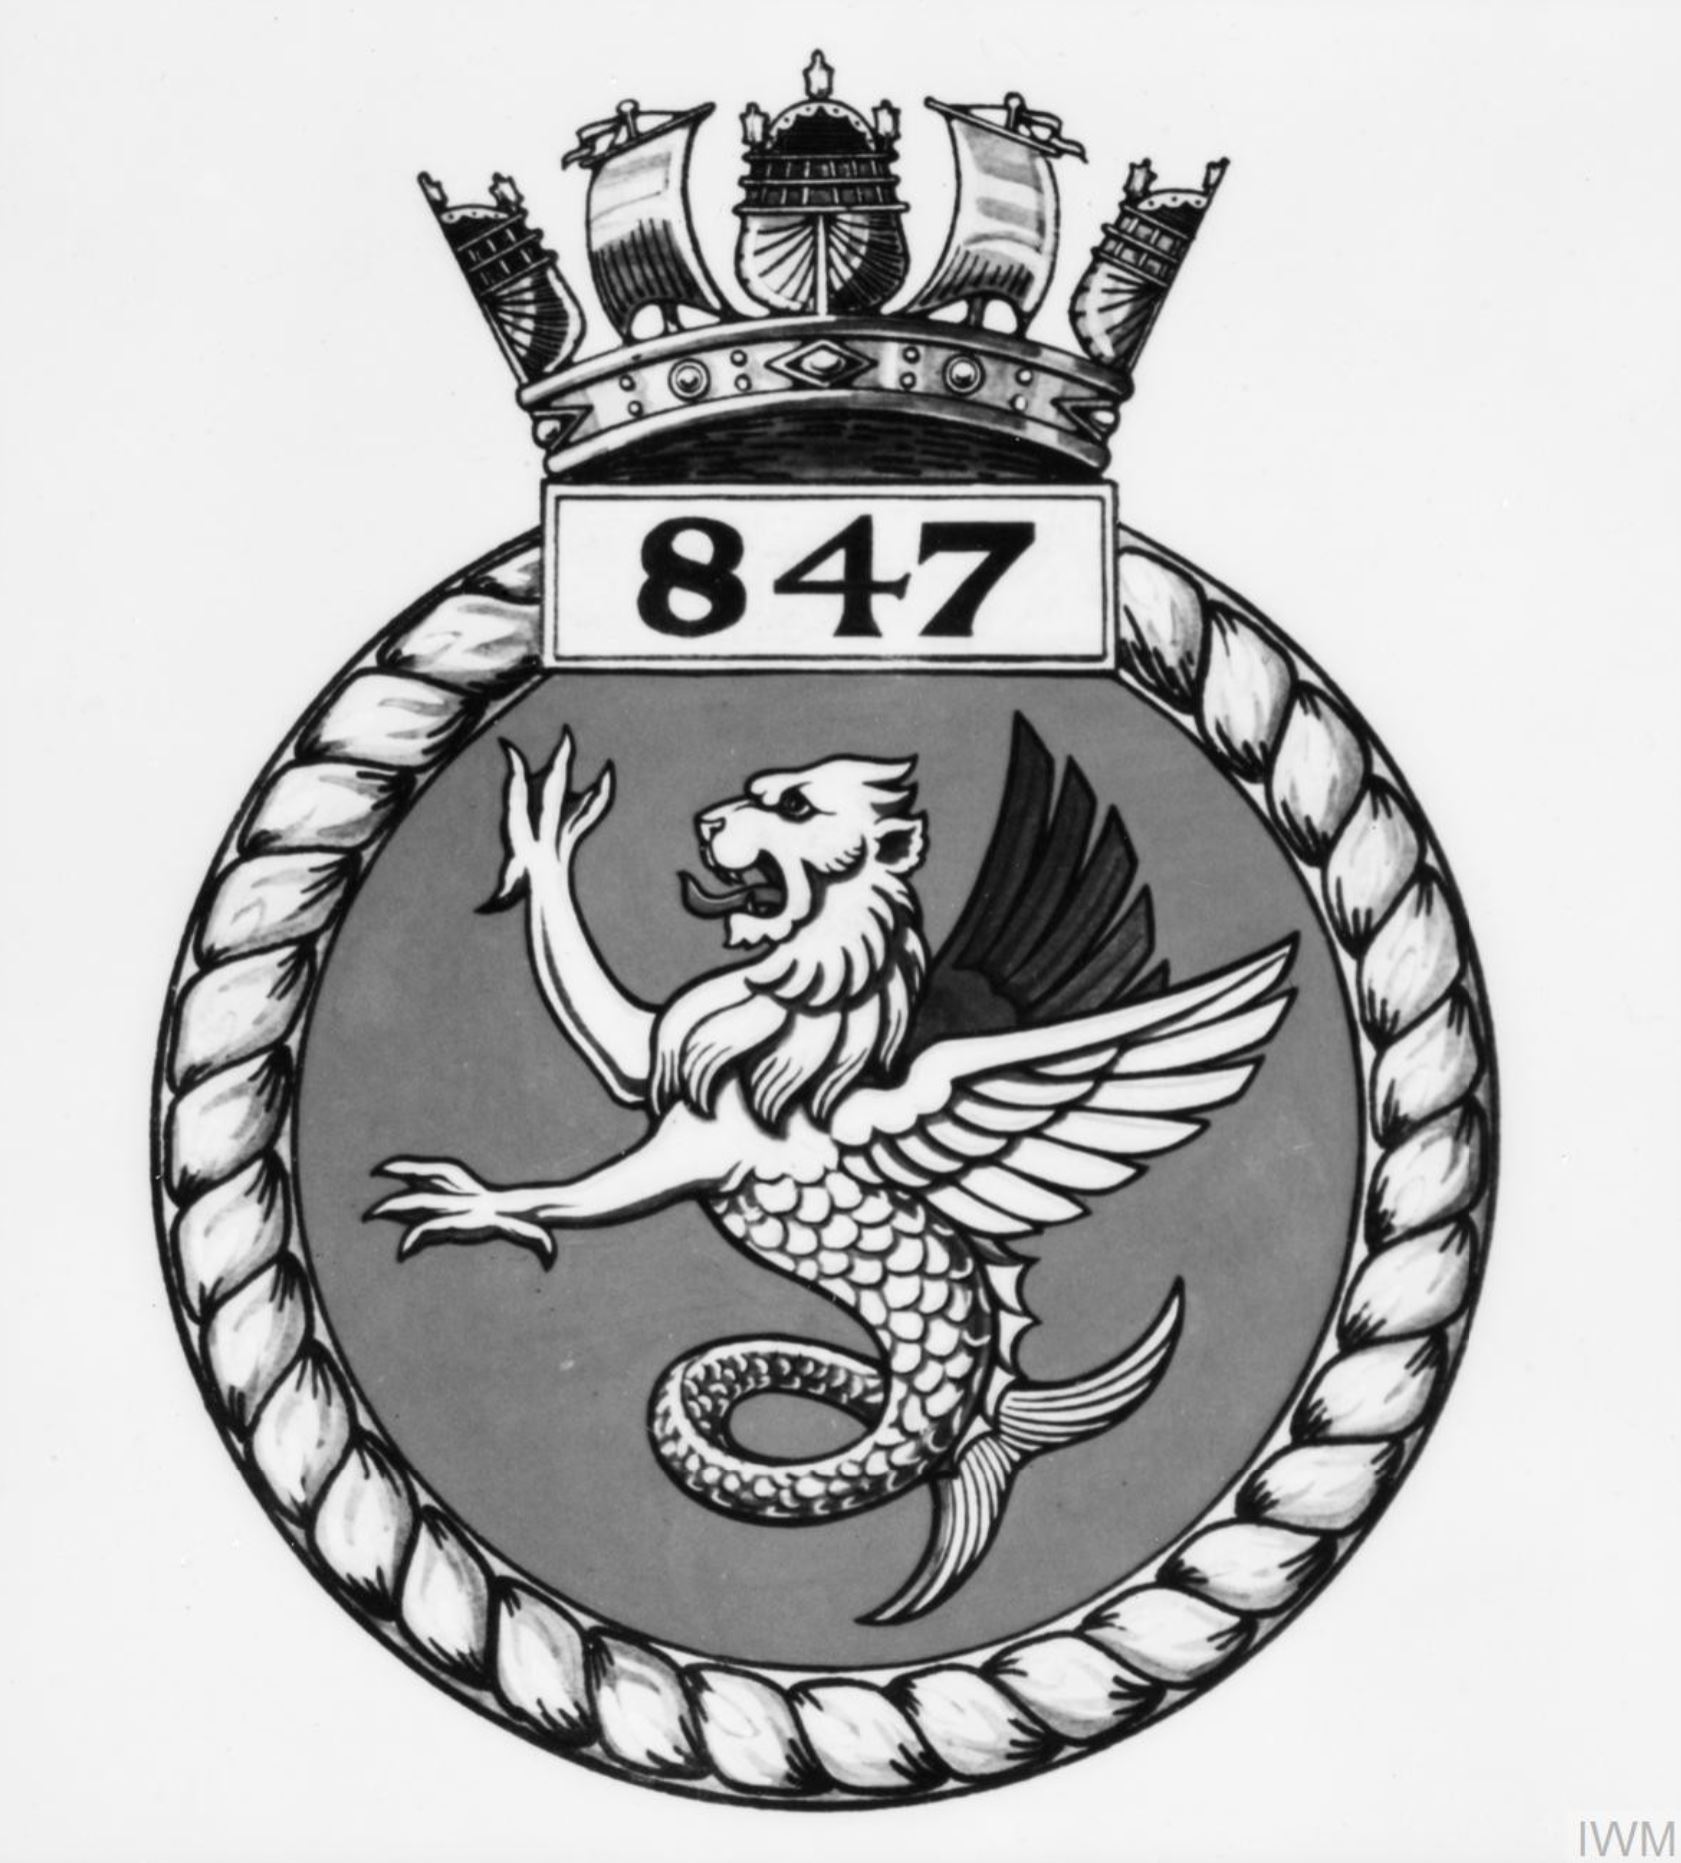 Fleet Air Arm crest of 847 Squadron IWM A26786